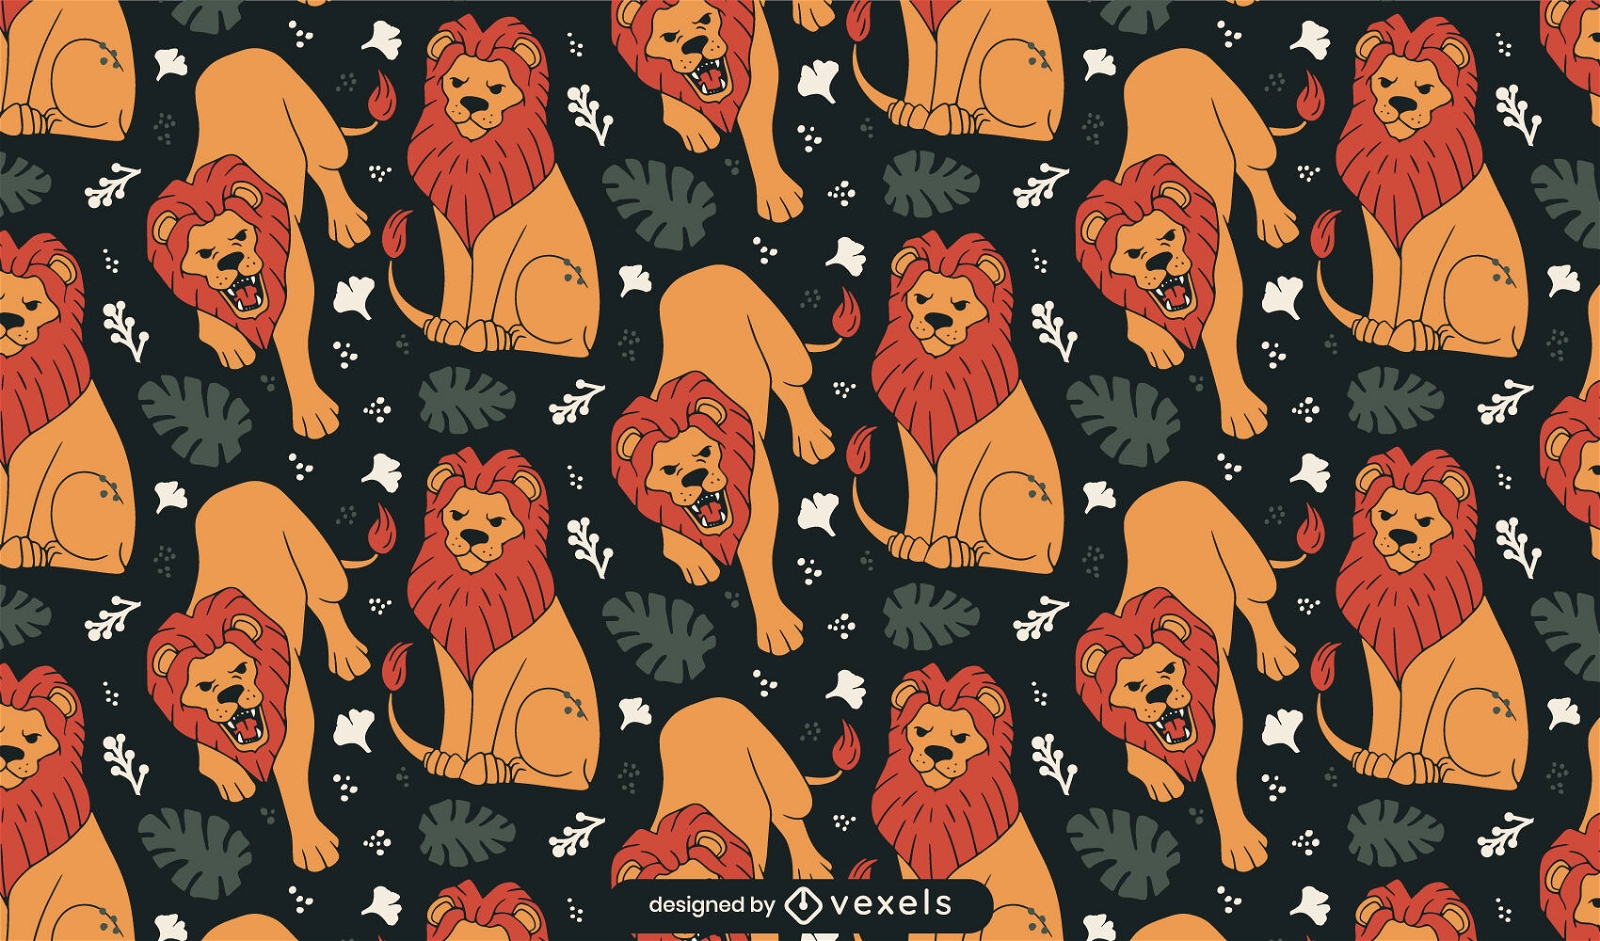 Dschungel-Musterdesign der wilden Tiere des Löwes